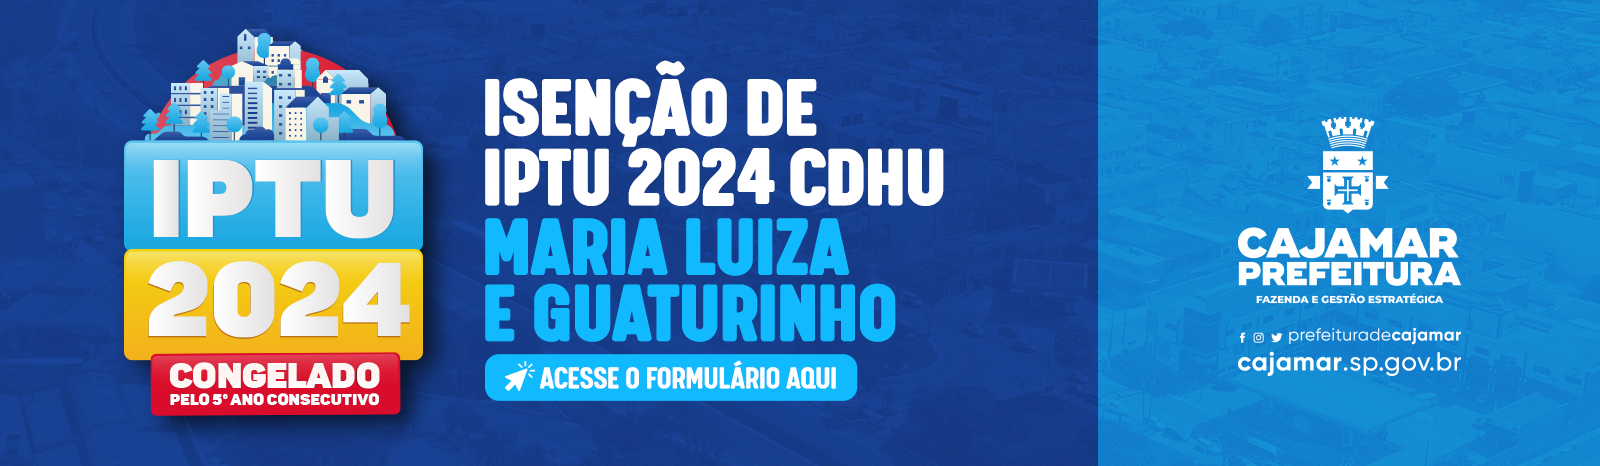 Isenção do IPTU do CDHU Maria Luiza e Guaturinho ocorrerá entre os dias 18 março e 28 de junho